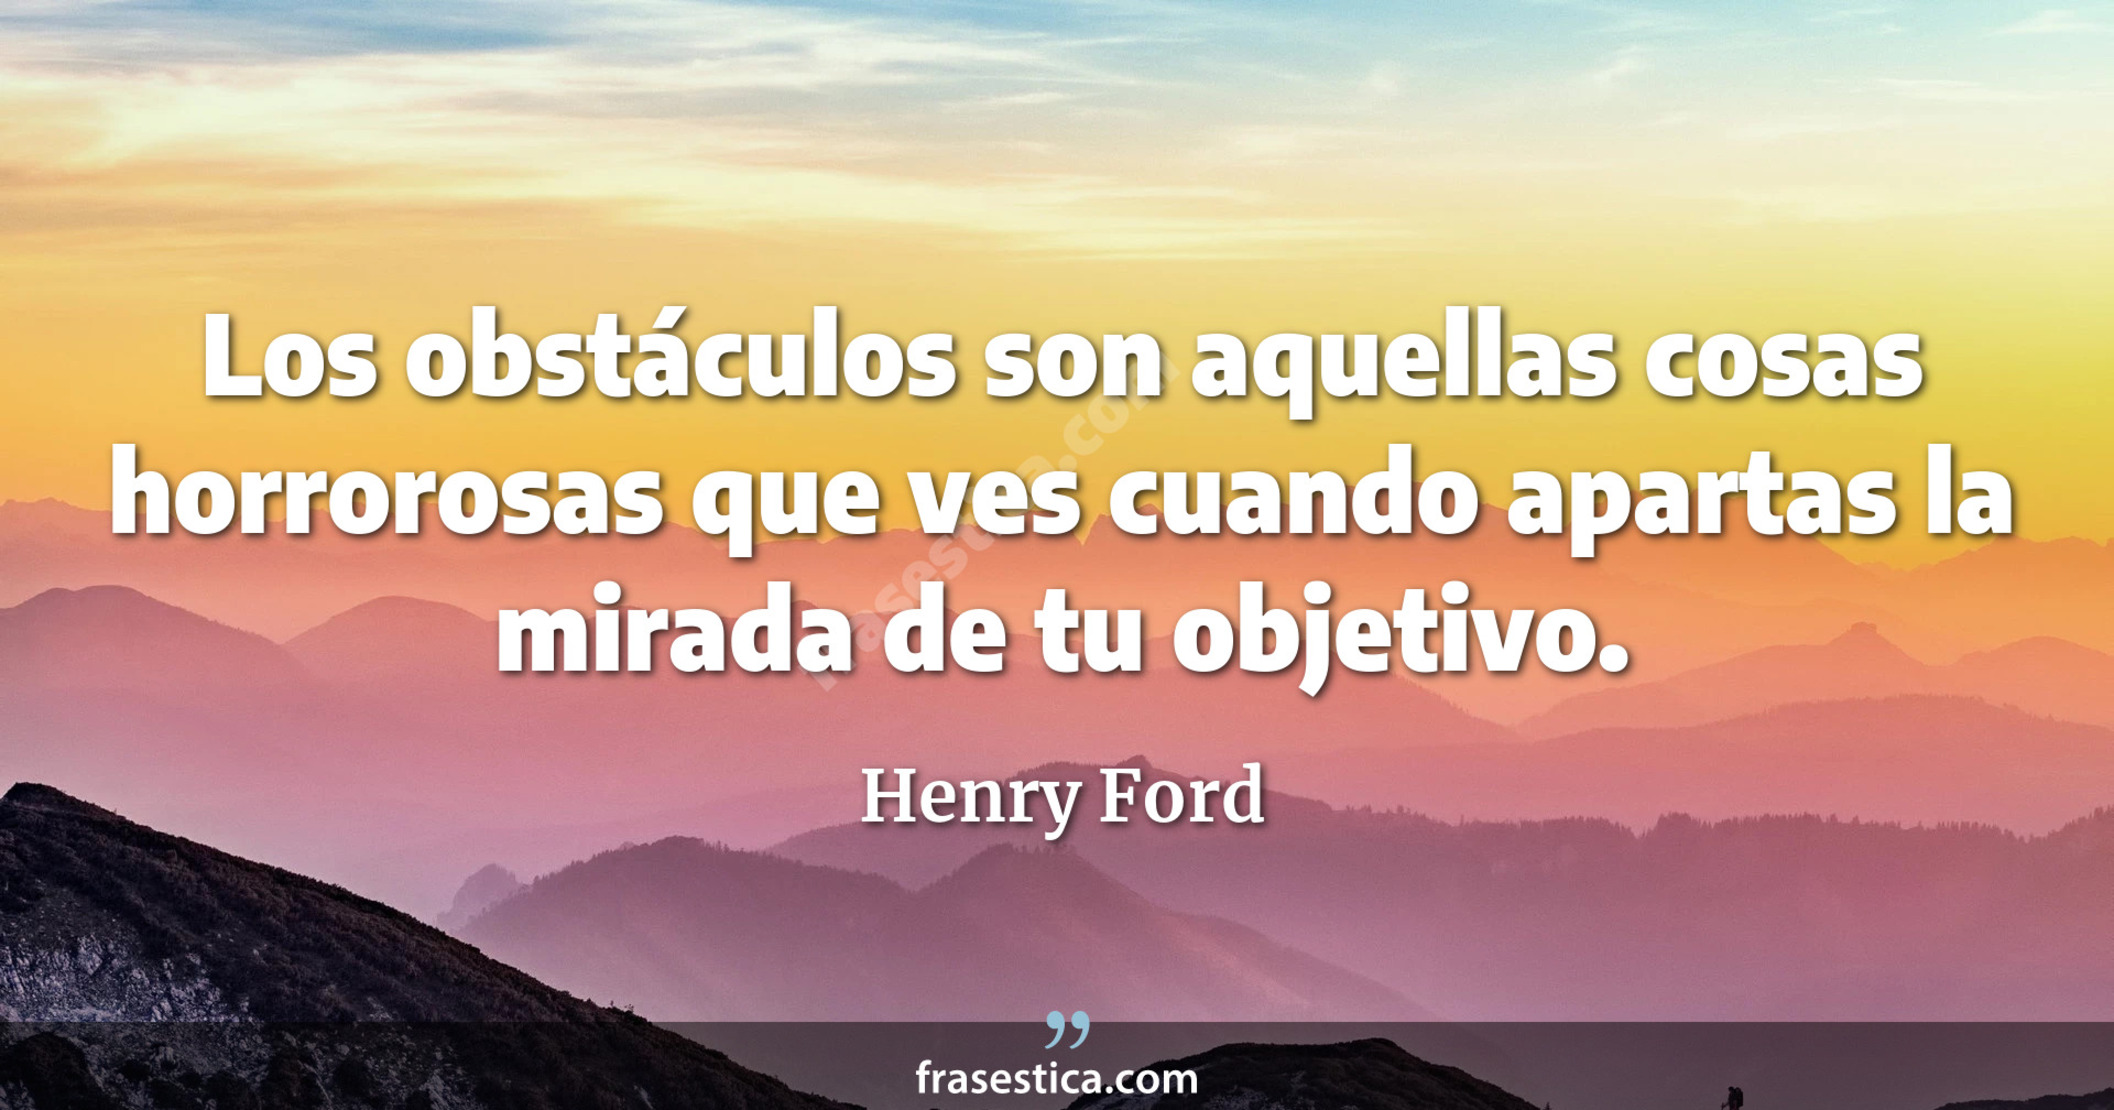 Los obstáculos son aquellas cosas horrorosas que ves cuando apartas la mirada de tu objetivo. - Henry Ford